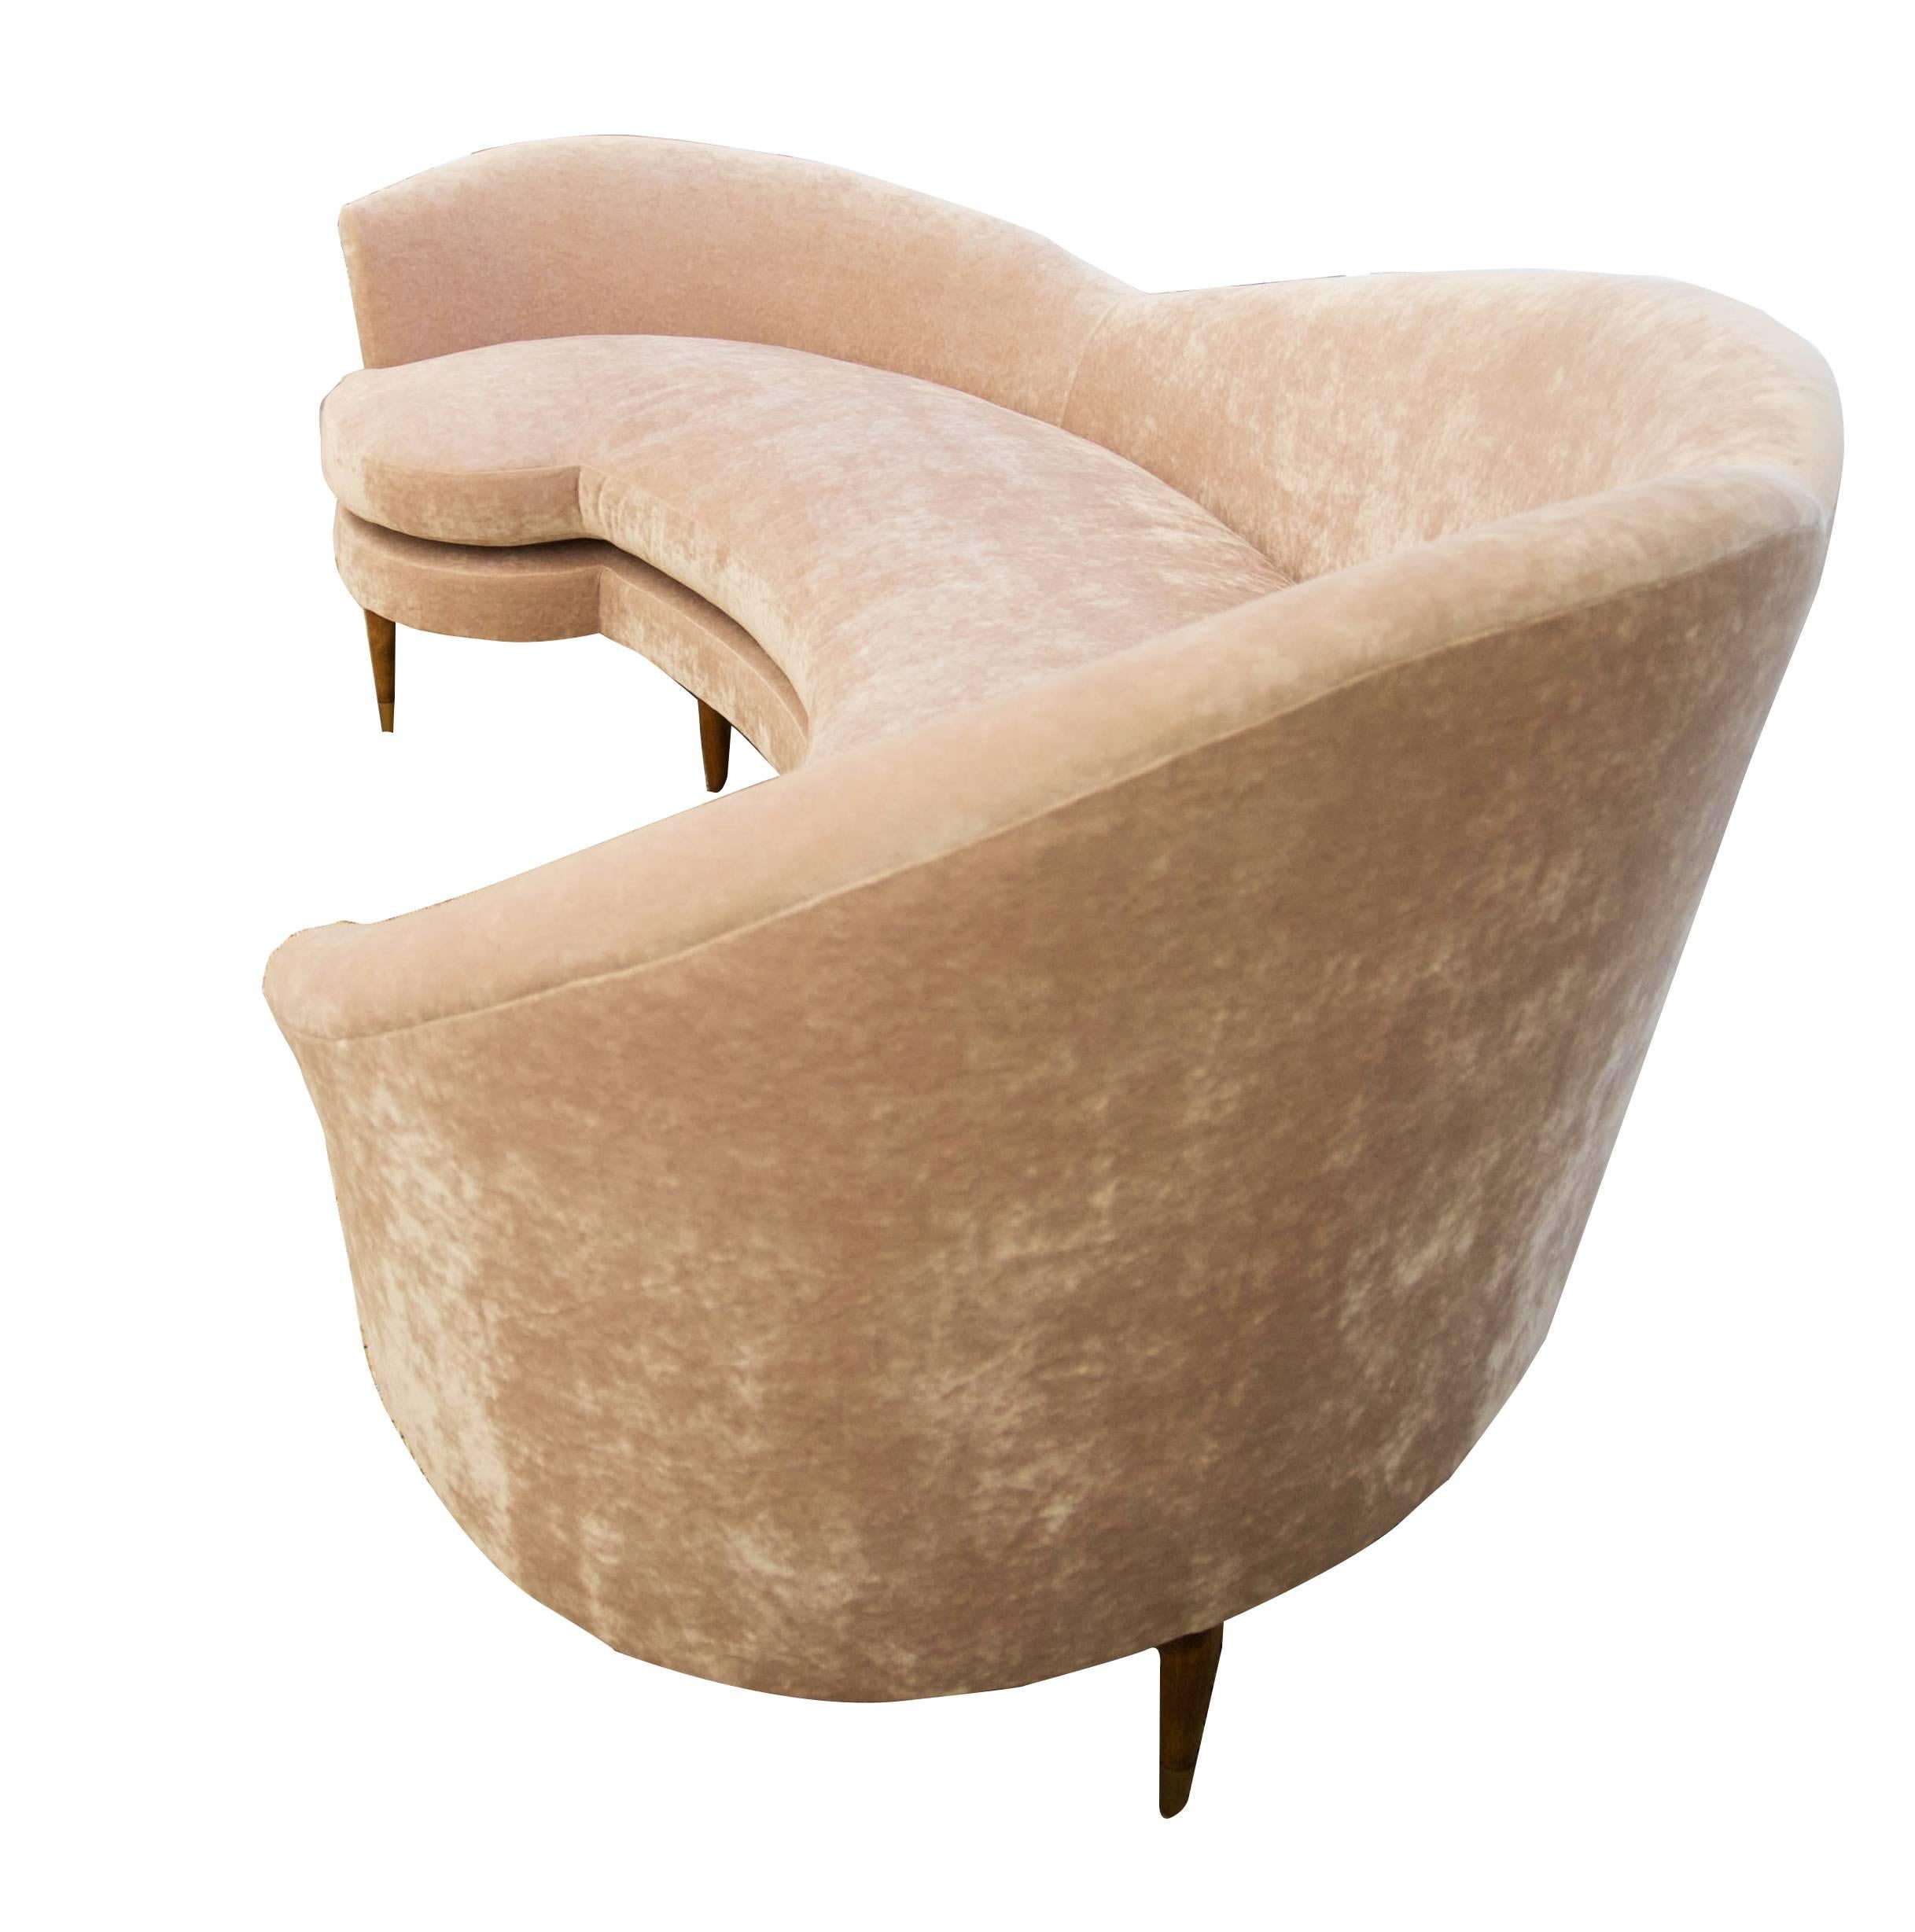 Großes geschwungenes Sofa, inspiriert vom italienischen Design der Jahrhundertmitte. Gepolstert mit rosafarbenem Knautschsamt. Samt ist schlaffrei. Einzelkissen mit Schaumstoff, Dacron und Daunen. Straffe Rückenlehne, die gleichzeitig weich und